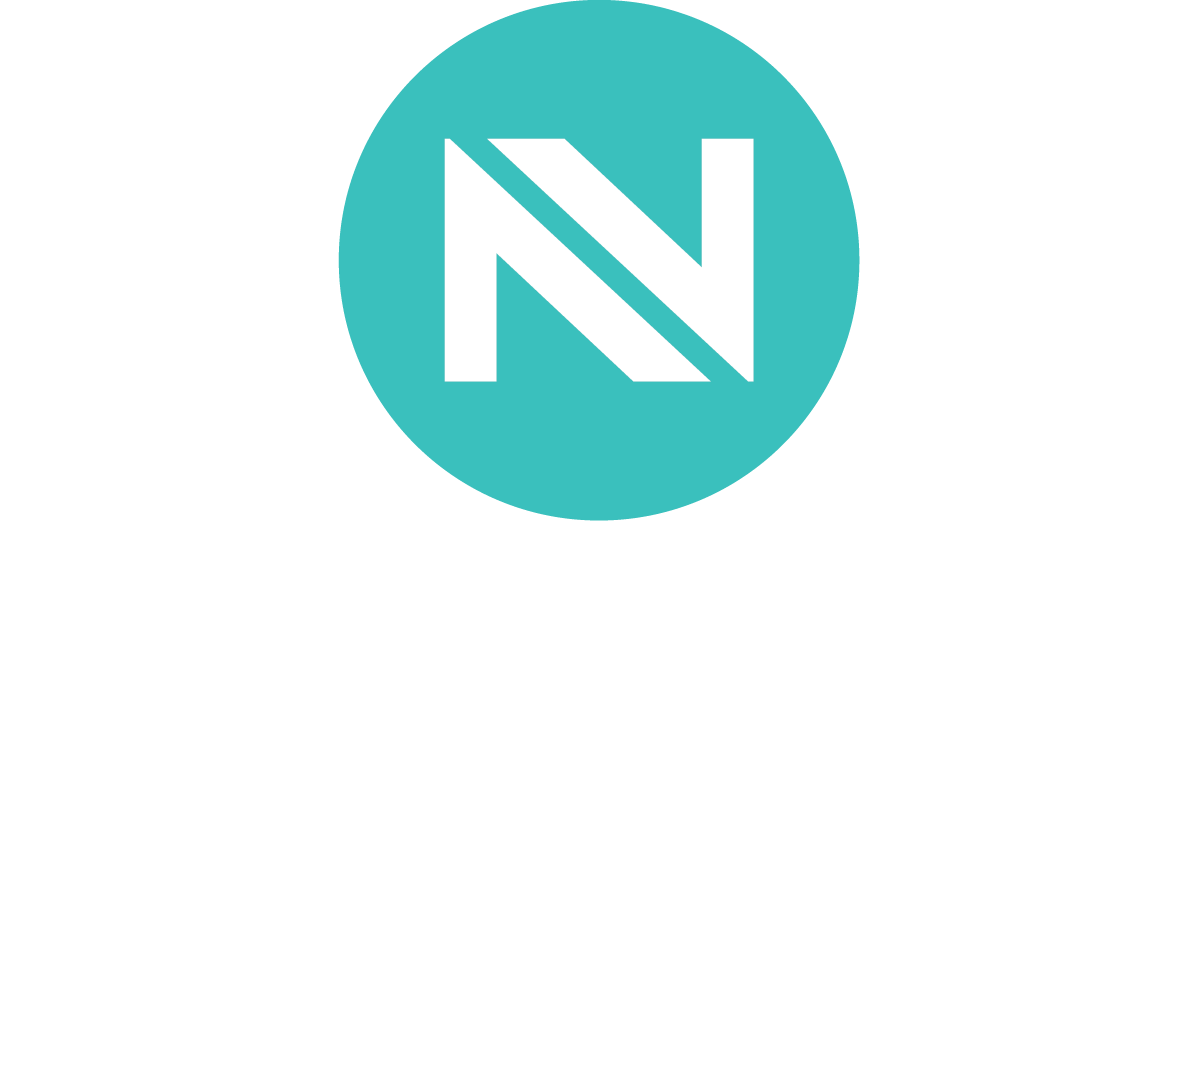 NOVON - Data is beautiful